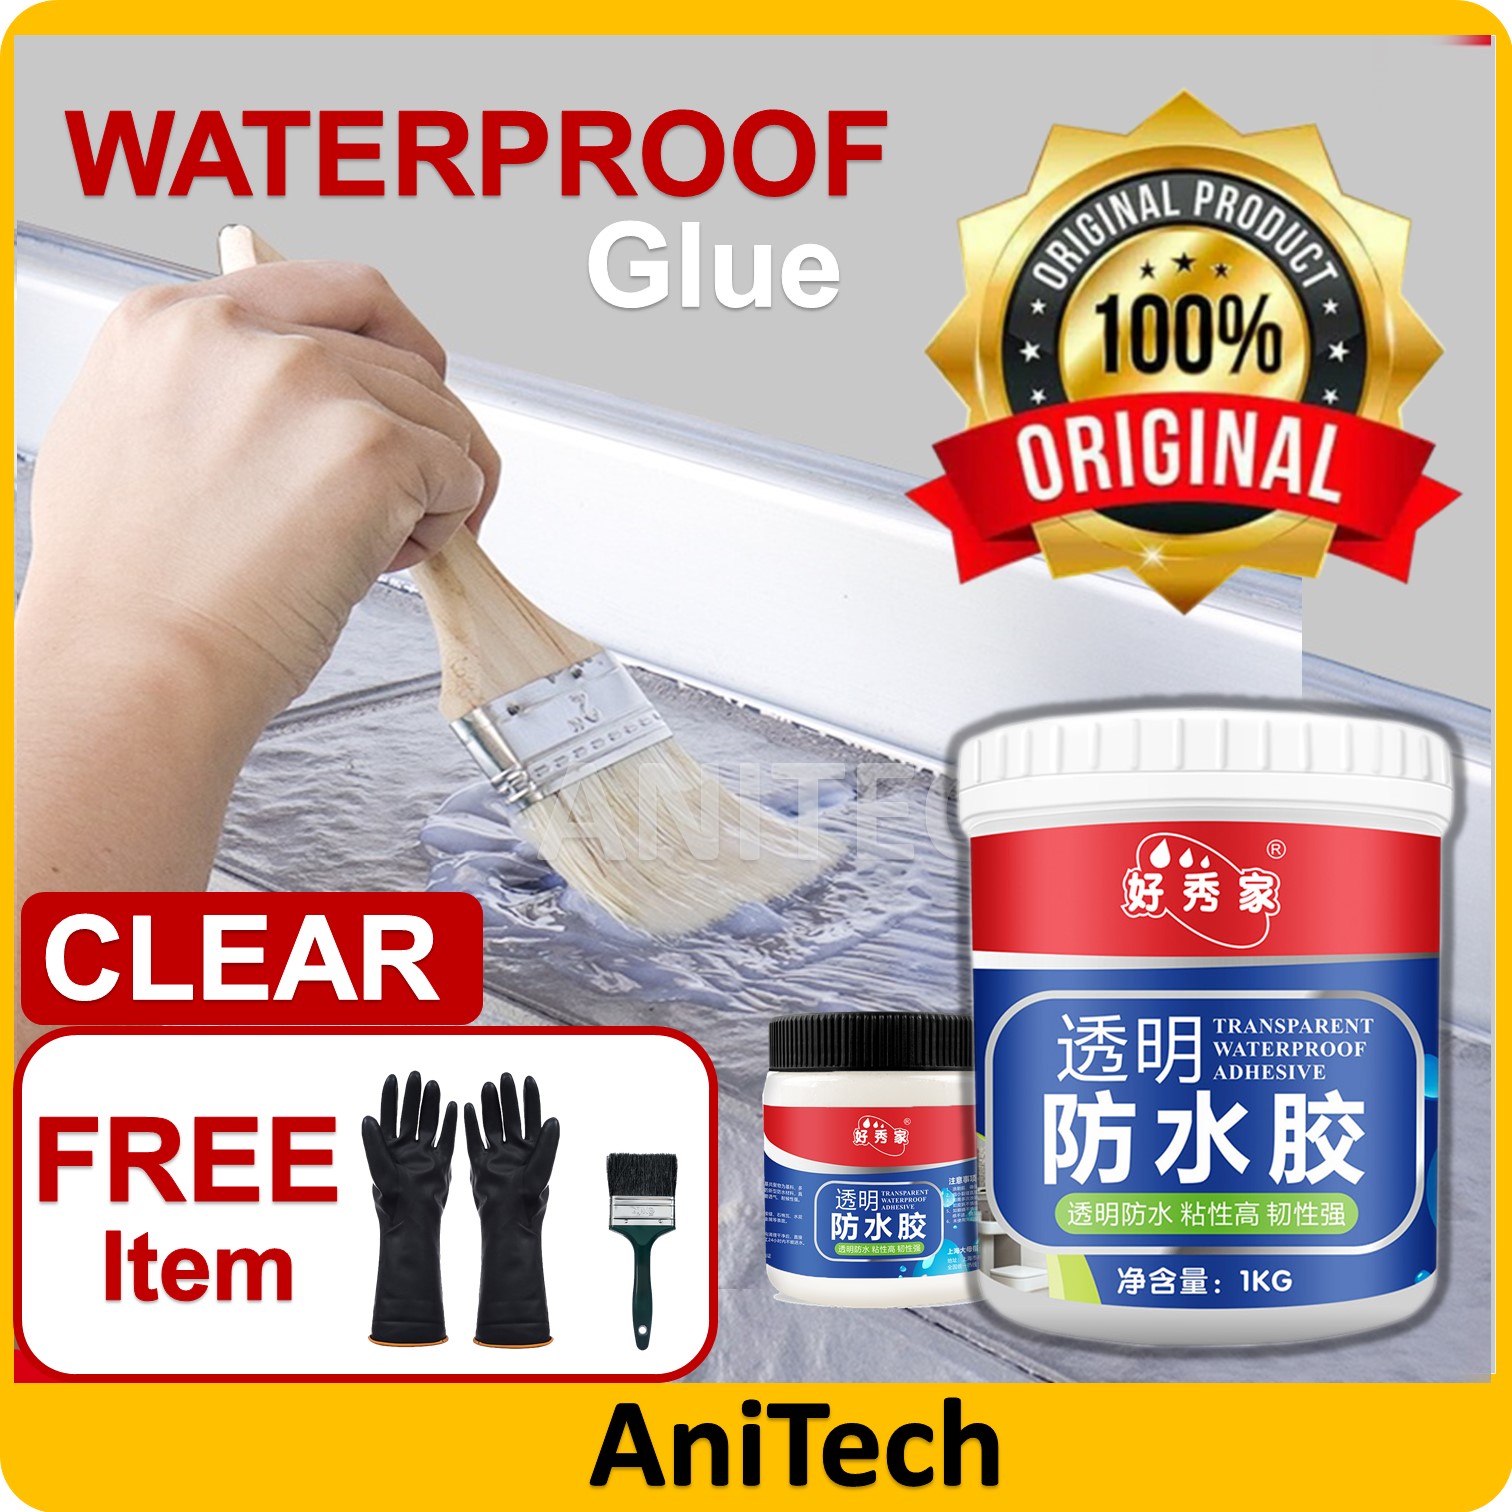 Waterproof Glue Water Proof Wall Tile Window Sill Stable Film Leakage ...